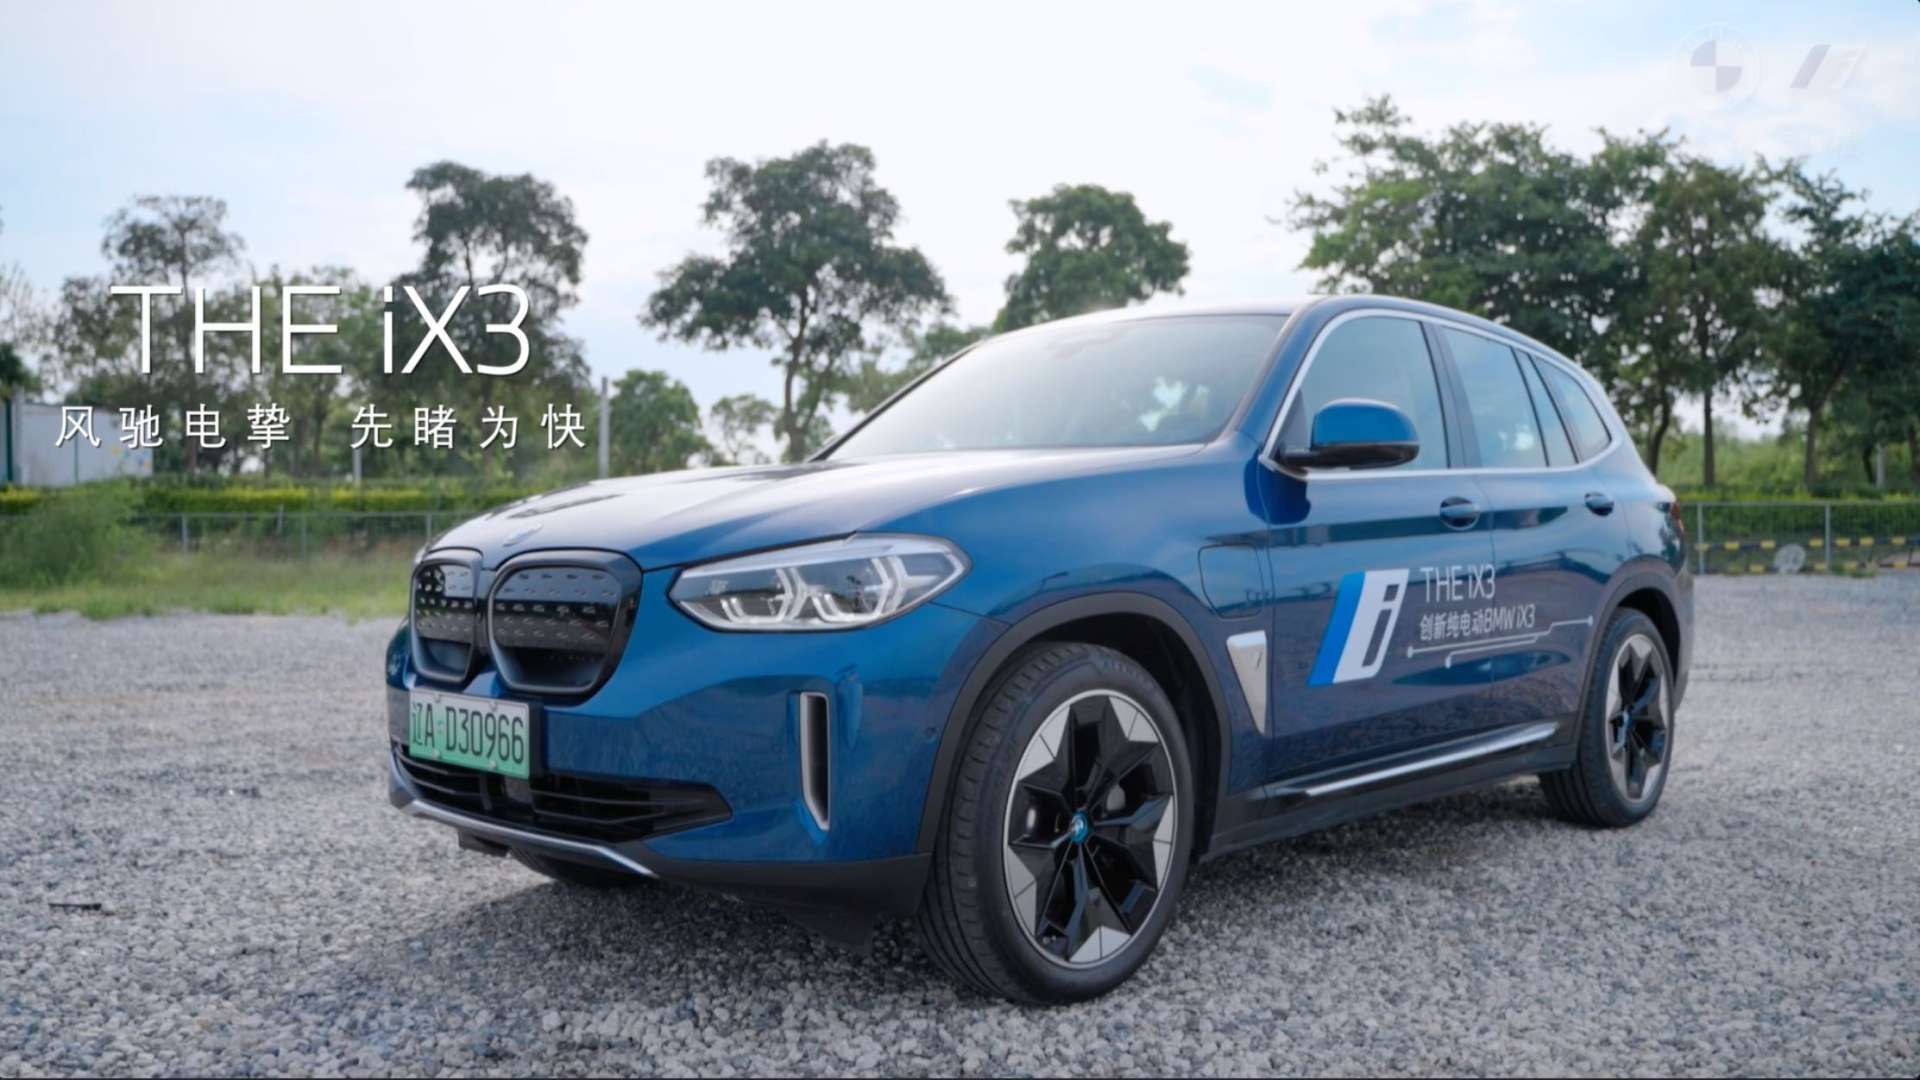 BMW iX3 4S店产品宣传广告